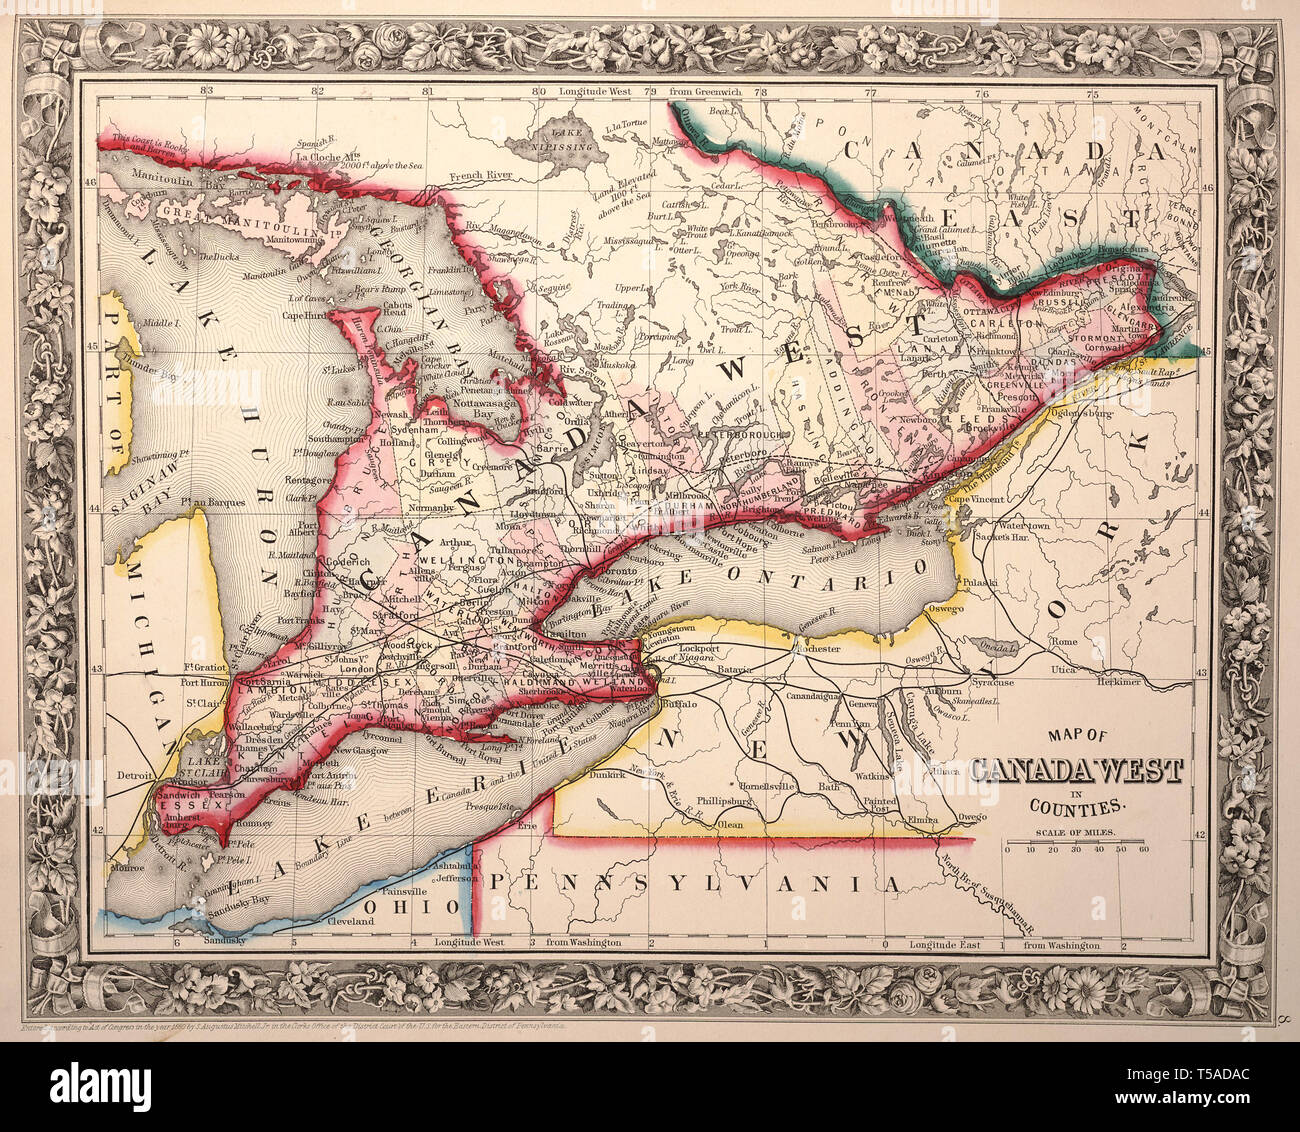 Vintage hermoso mapa dibujado a mano ilustraciones del oeste de Canadá de libro viejo. Puede ser utilizado como elemento decorativo o póster para el diseño de interiores. Foto de stock